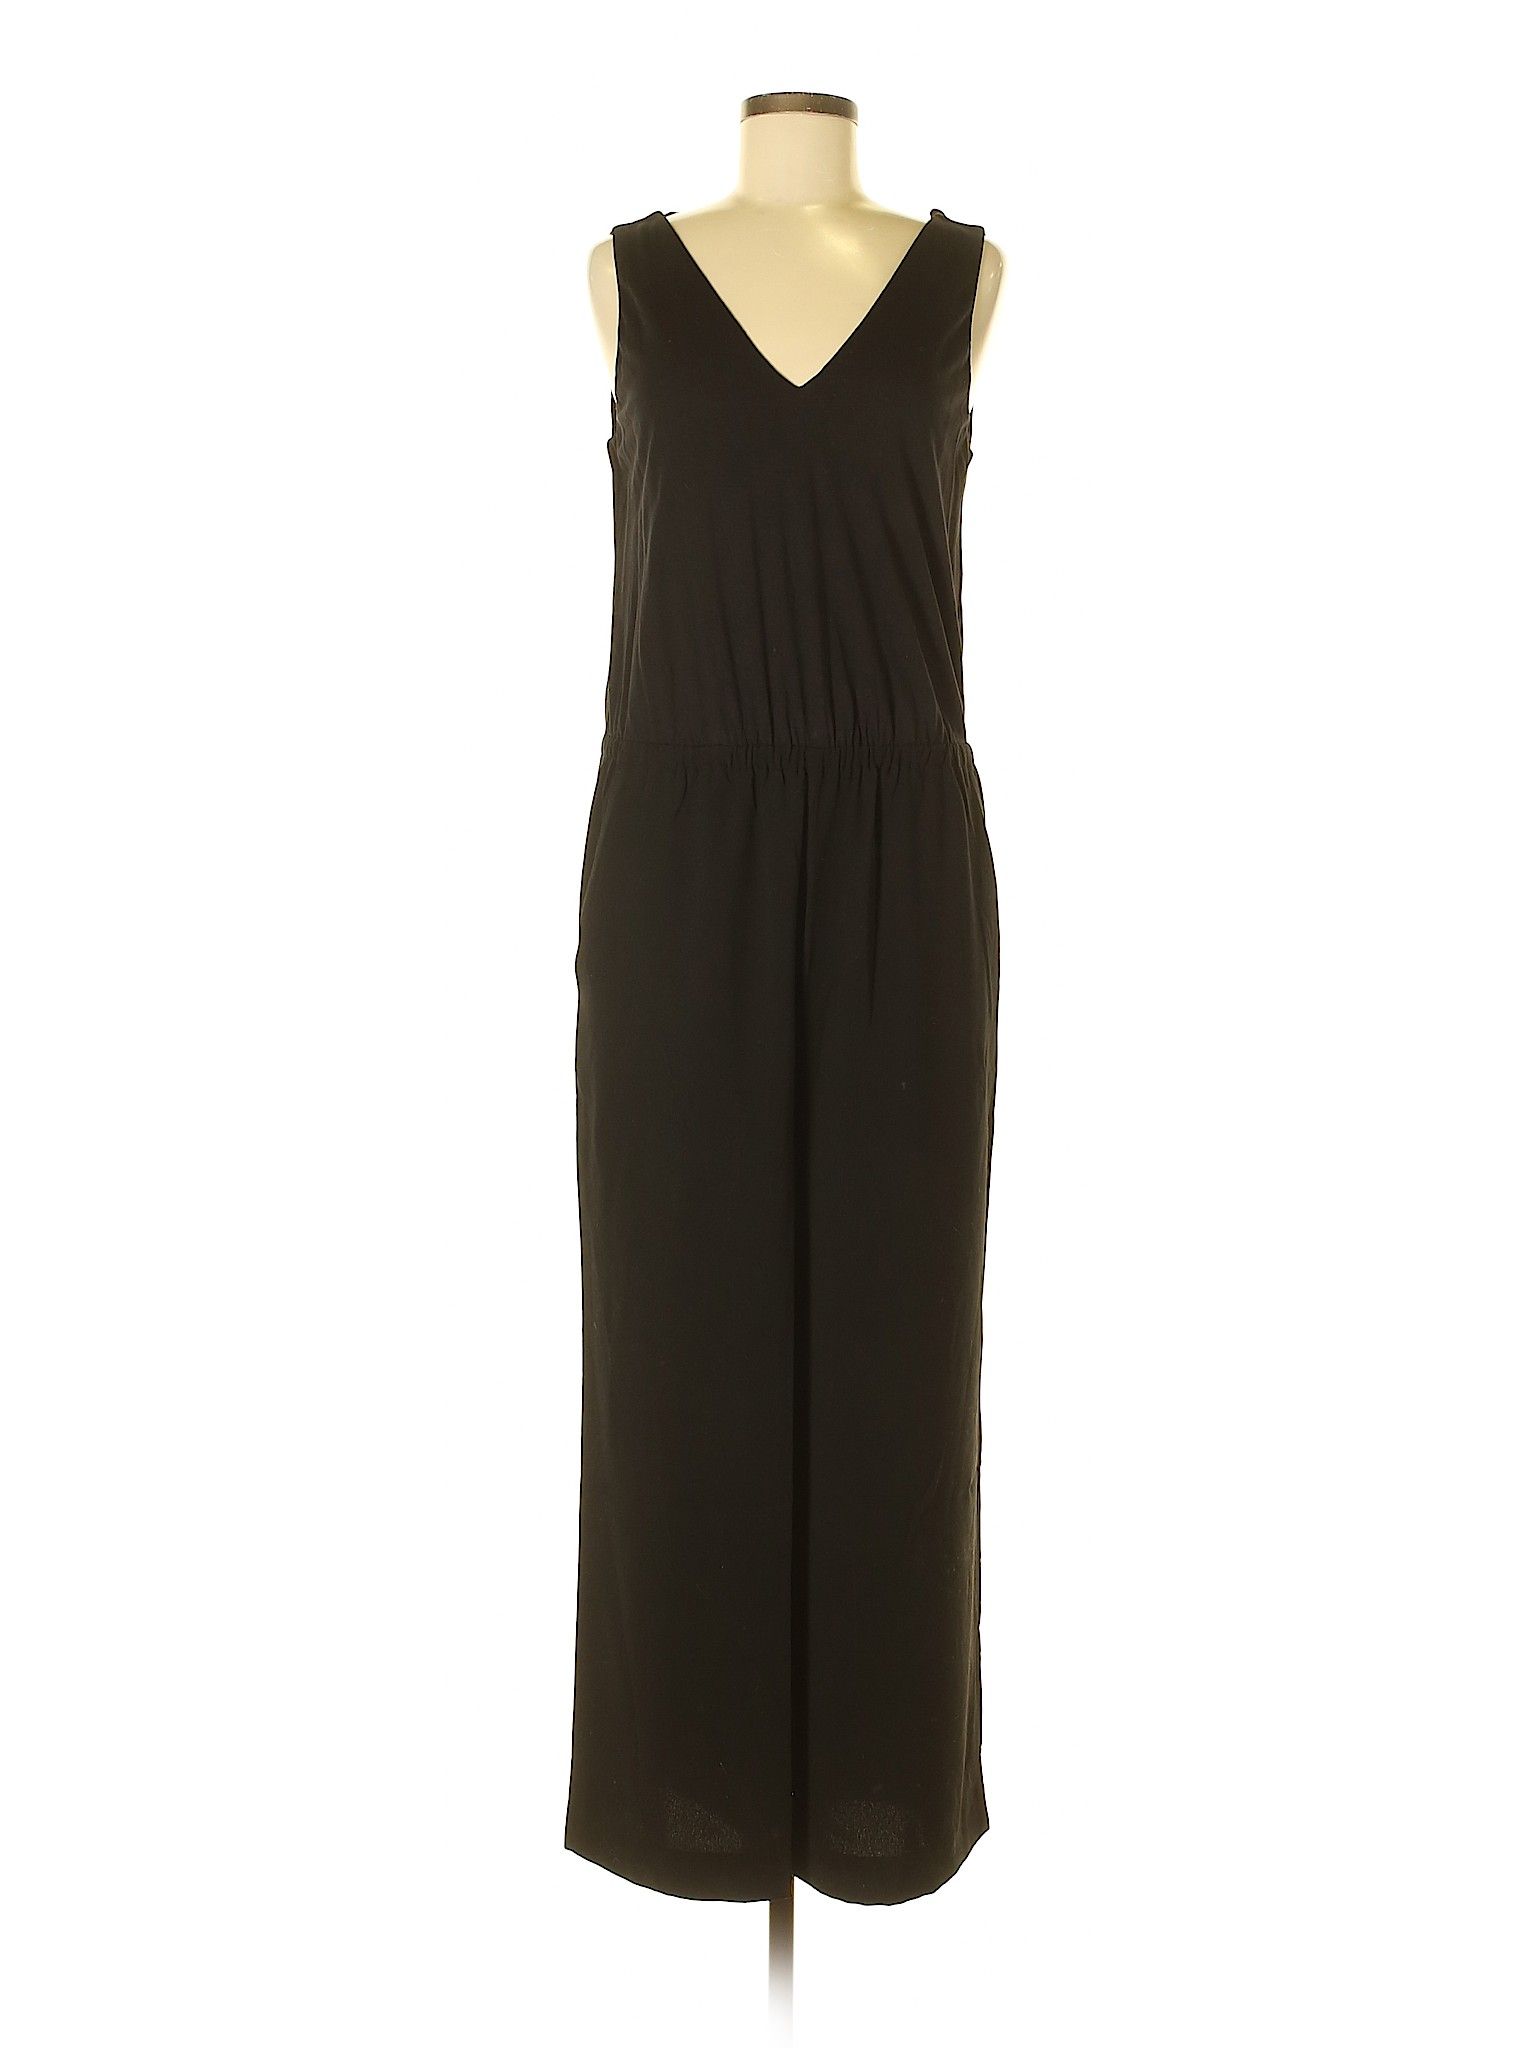 Ann Taylor LOFT Jumpsuit Size 8: Black Women's Dresses - 44659782 | thredUP